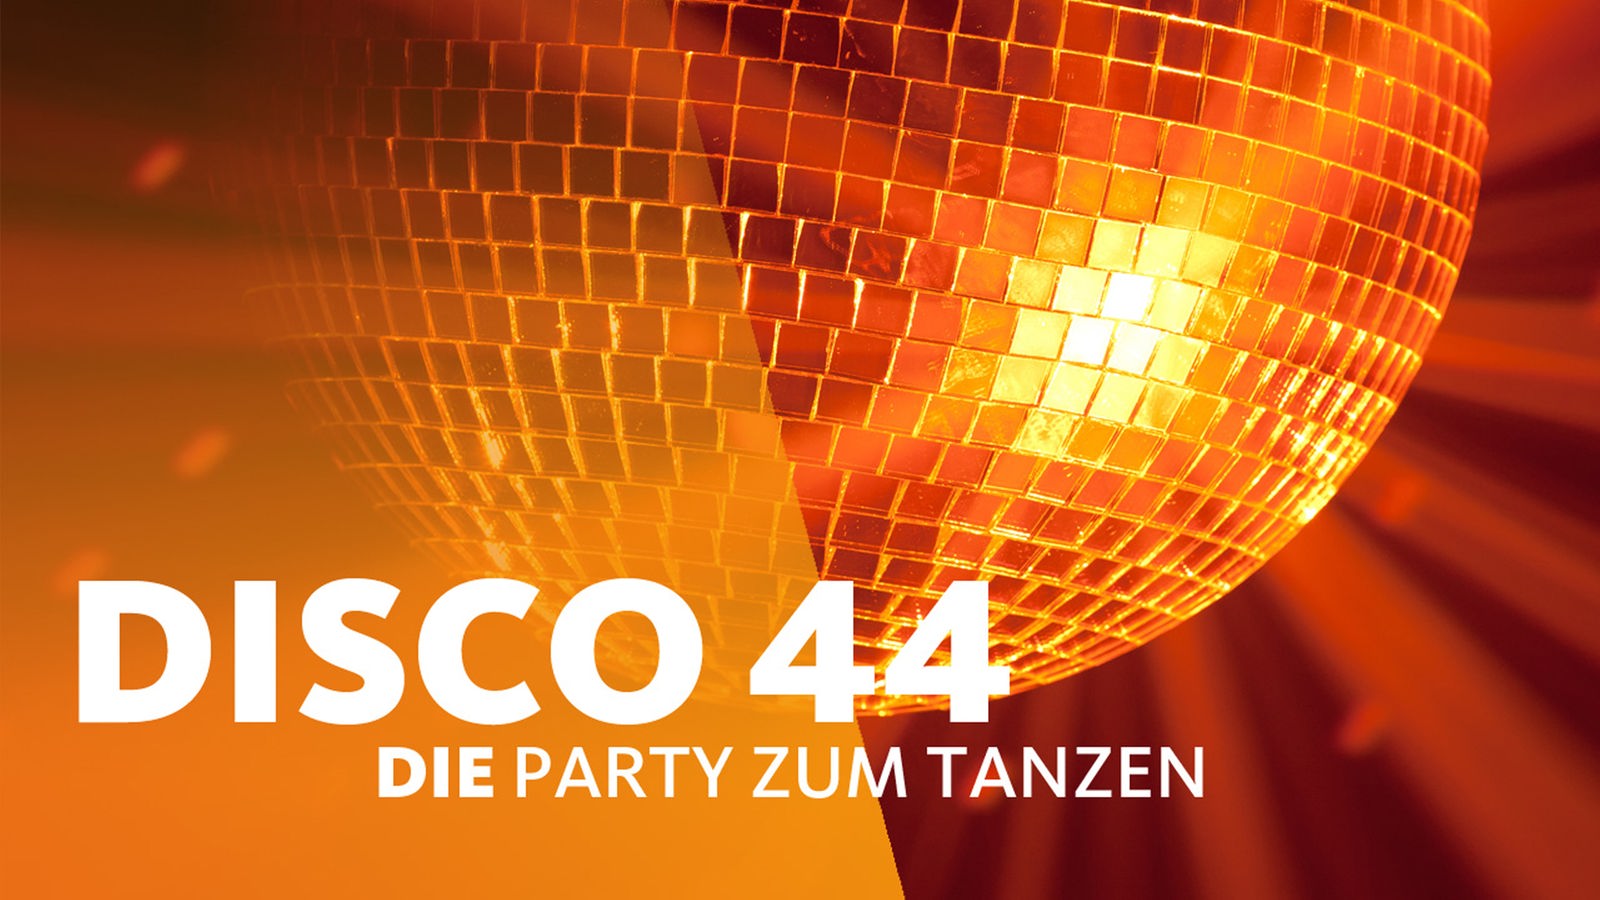 Disco 44 Die Party Zum Tanzen Mit Wdr 4 Auf Dem Rhein Silvester Vorfeiern Wdr 4 Prasentiert Veranstaltungen Wdr 4 Radio Wdr